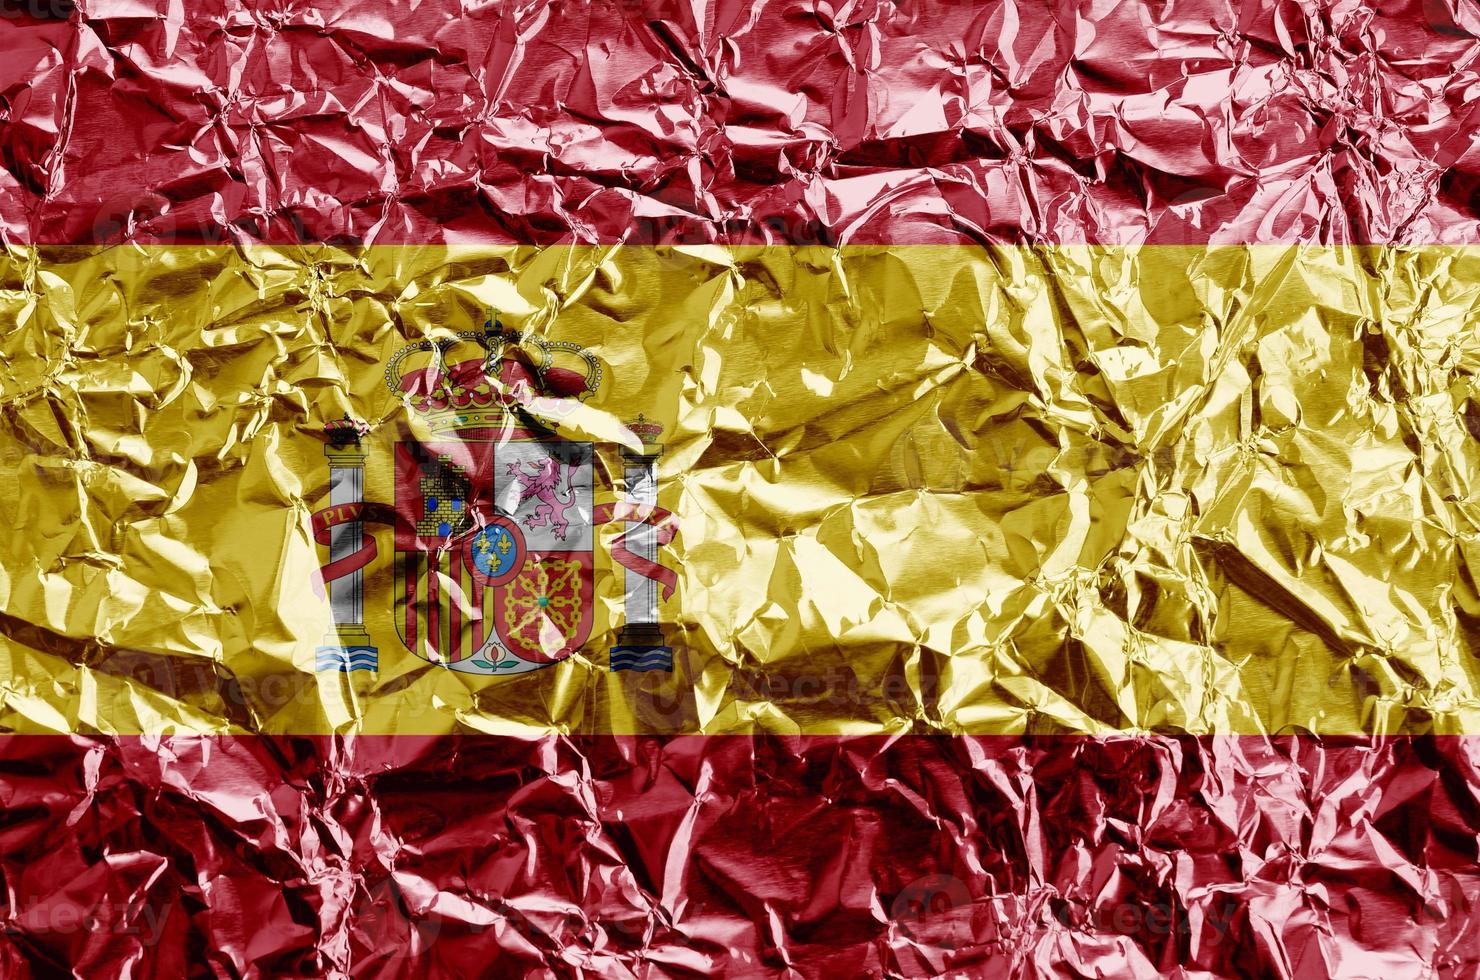 Spanien flagga avbildad i måla färger på skinande skrynkliga aluminium folie närbild. texturerad baner på grov bakgrund foto